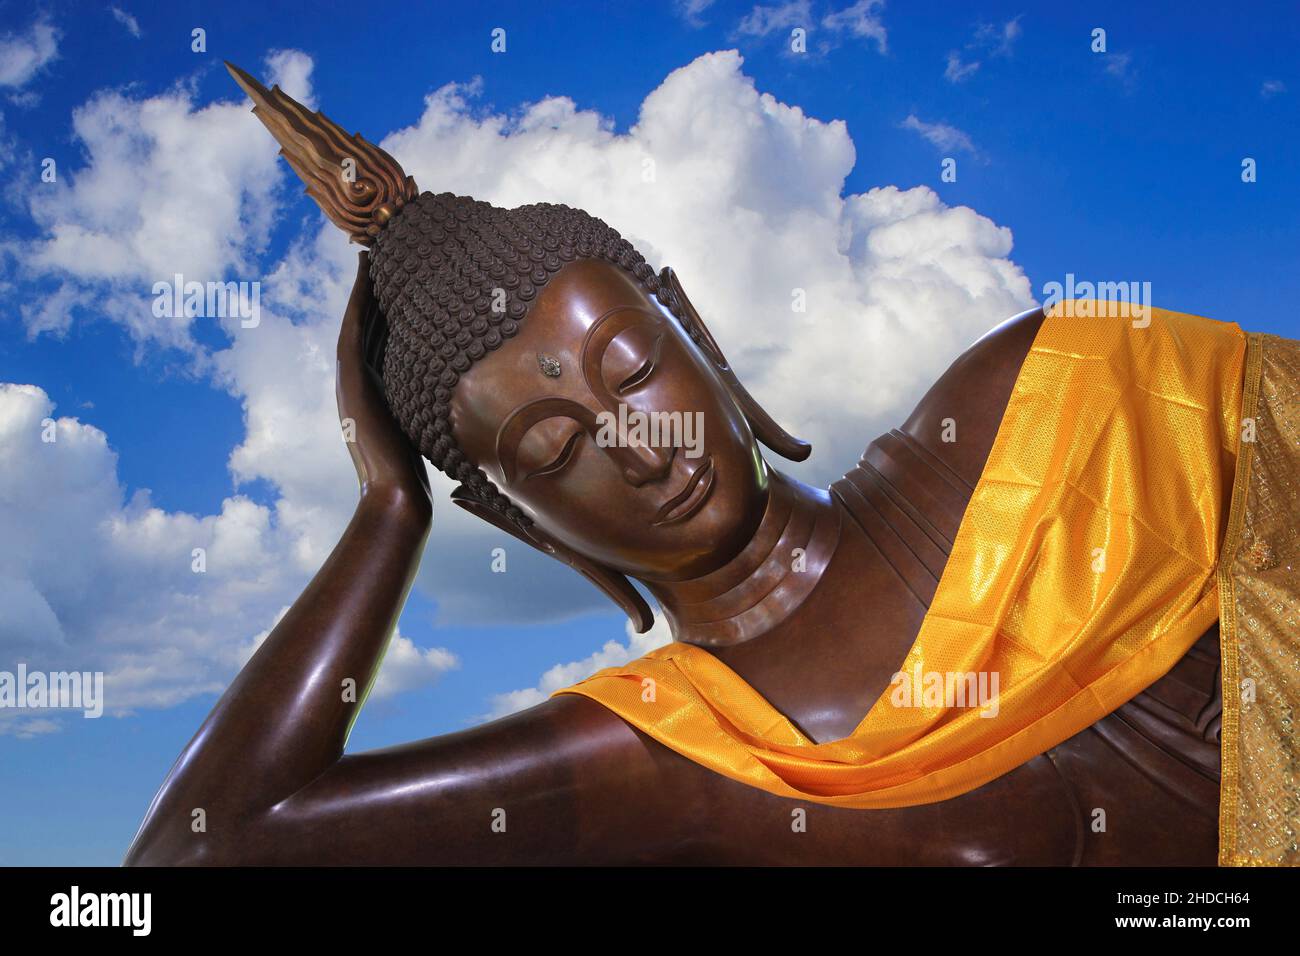 Liegender Buddha vor blauen Himmel mit Cumulus Wolken, Thailand, Bangkok, Stock Photo